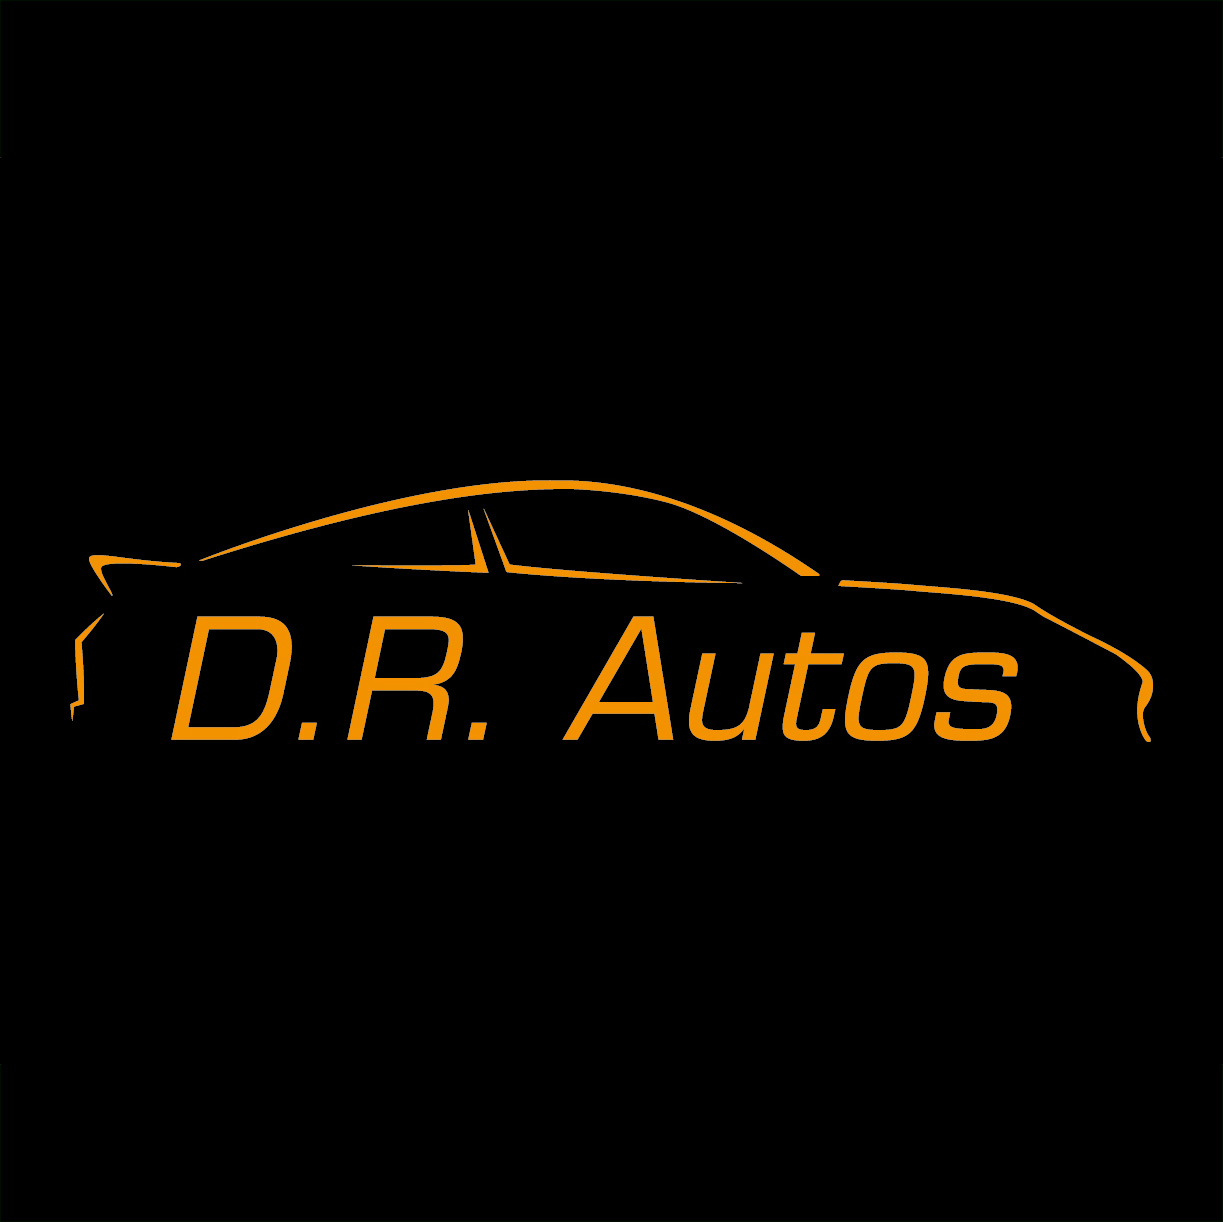 D.R. autos logo